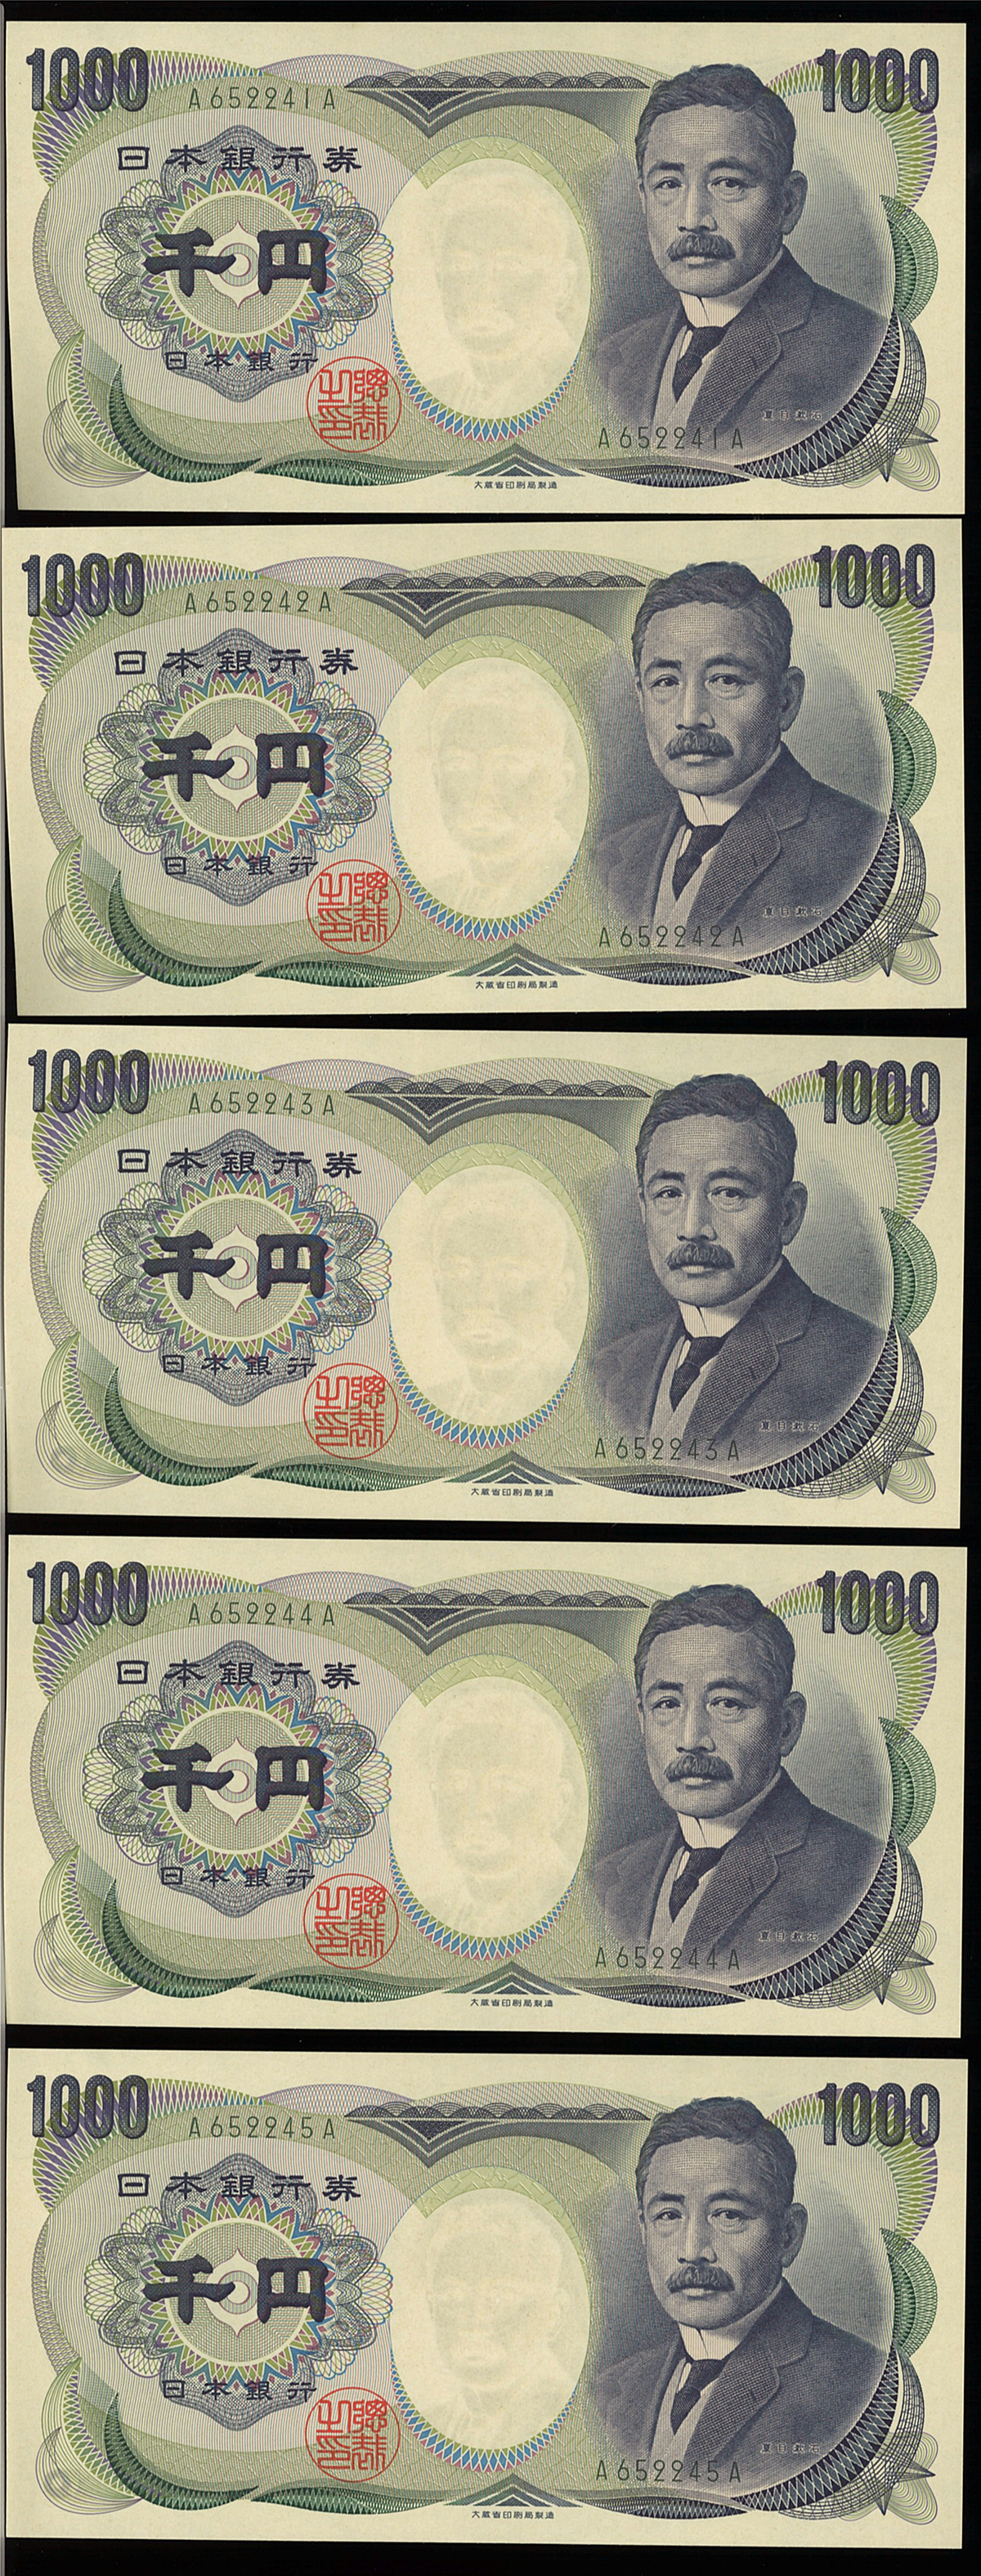 Coin Museum 日本 夏目漱石1000円札各種 Unc 未使用品